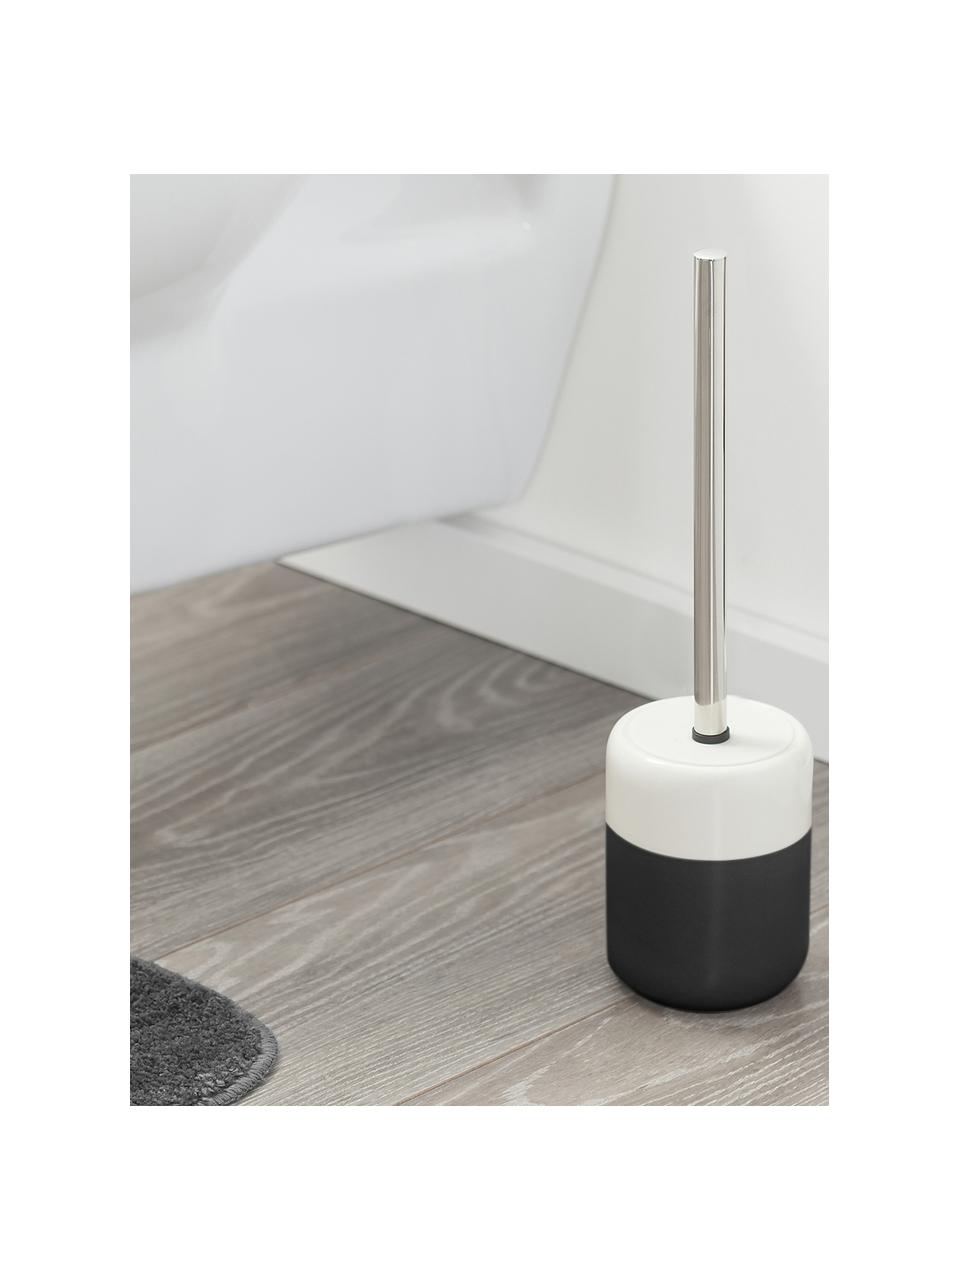 WC kartáč s nádobou z porcelánu Sphere, Nádoba: černá, bílá WC kartáč: nerezová ocel, Ø 10 cm, V 38 cm